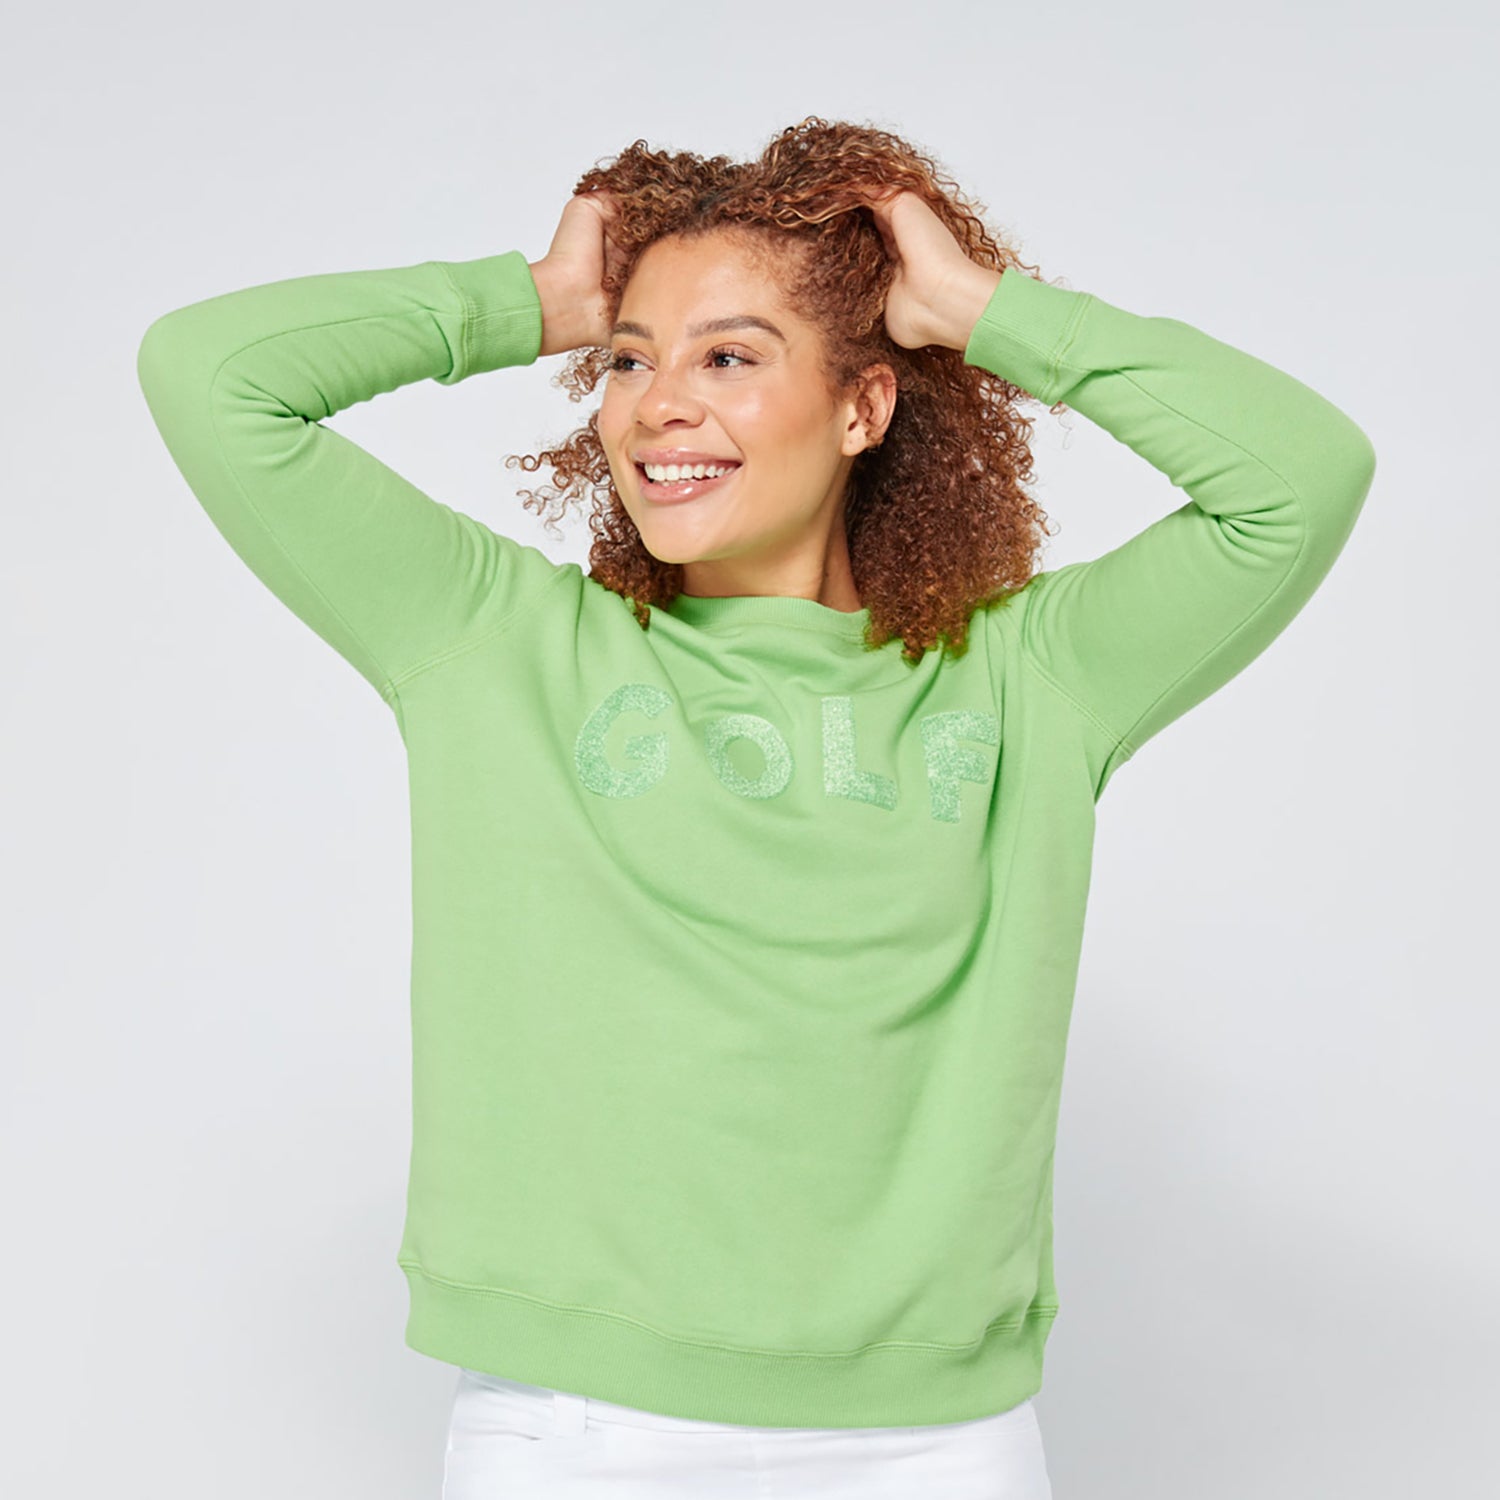 Swing Out Sister Ladies Embossed Golf Sweatshirt in Emerald